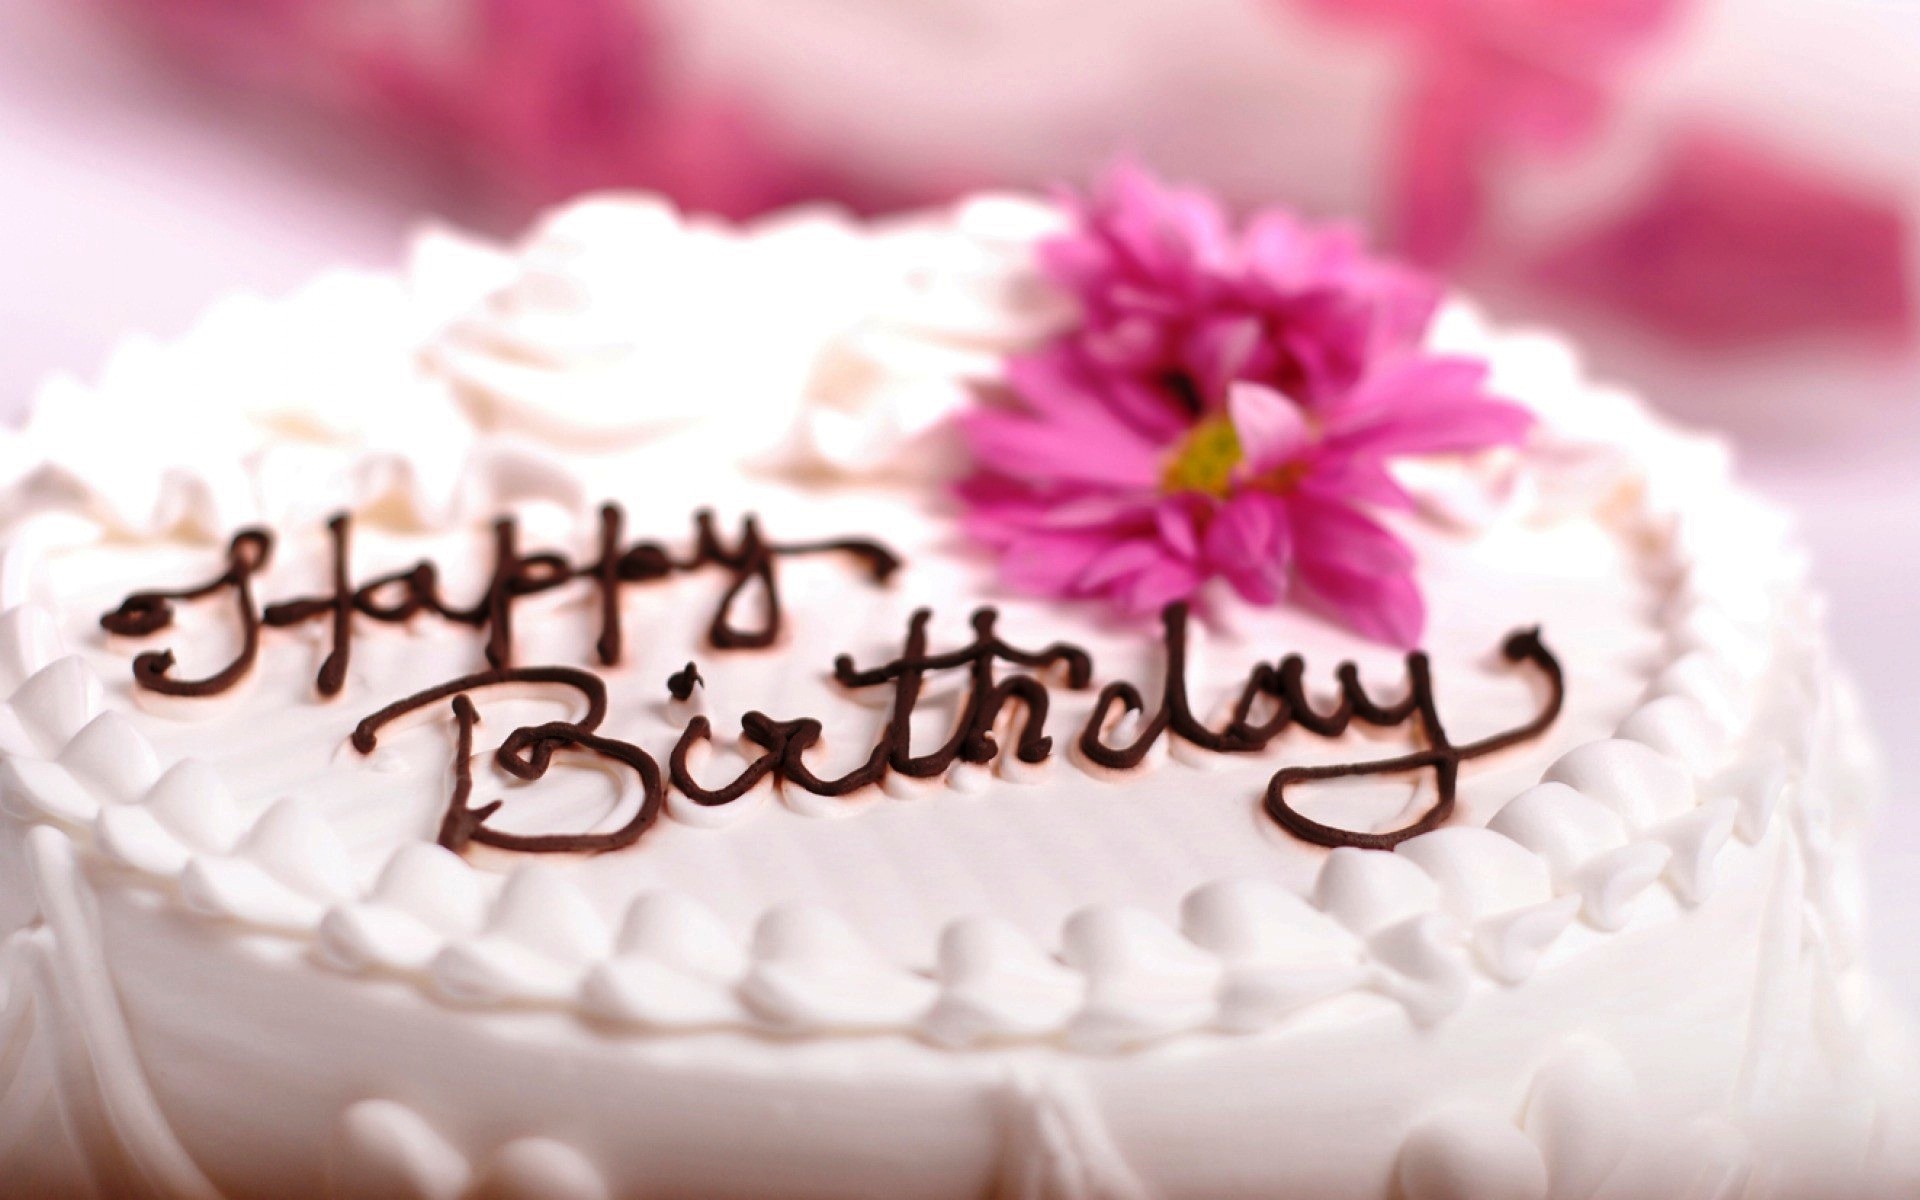 Happy Birthday chocolate cream written cake - New hd ...Happy Birthday Swee...